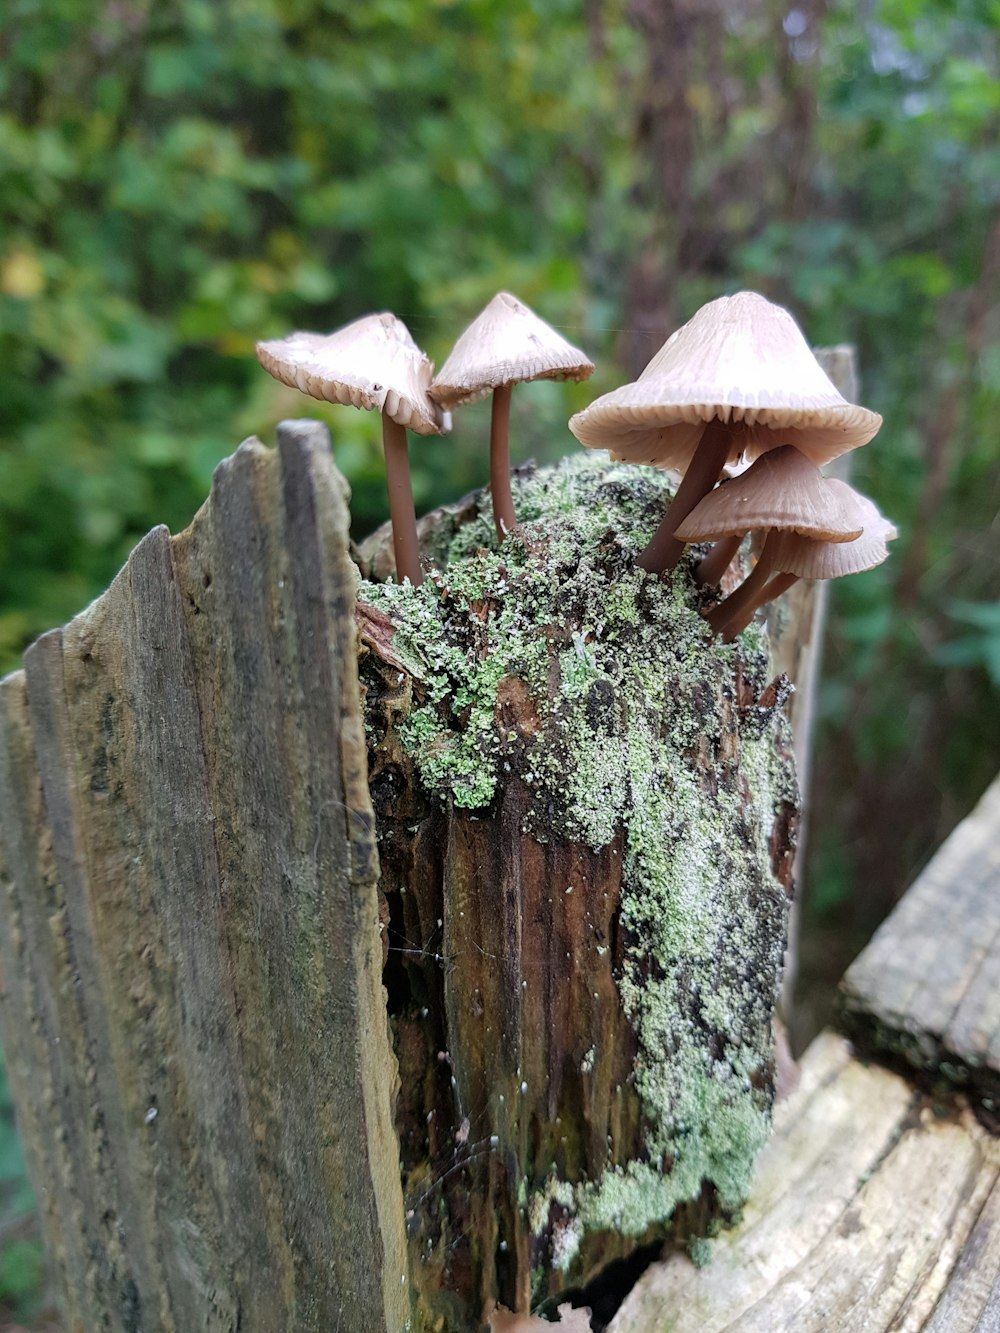 Cinq champignons bruns poussaient sur un tronc en bois brun